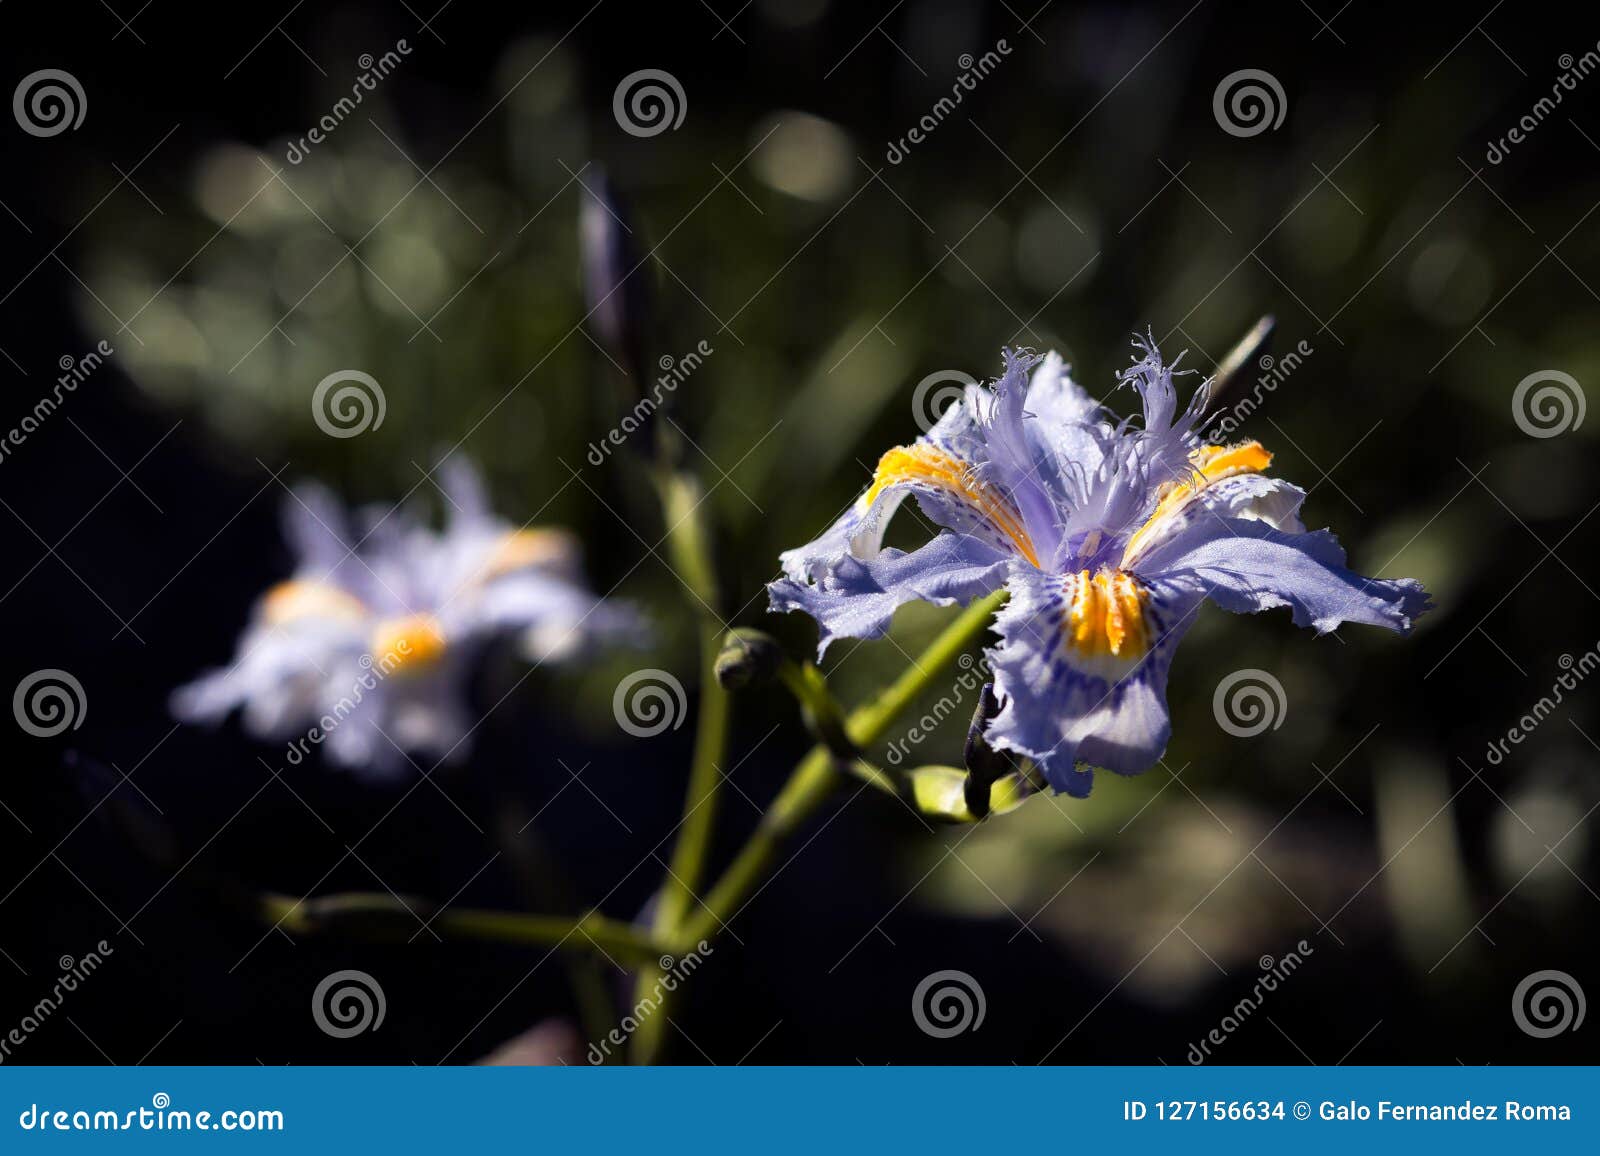 flor violeta - iris japonica o lirio de japÃÂ³n fringed iris. - violet flower - iris japonica or lily of japan fringed iris.